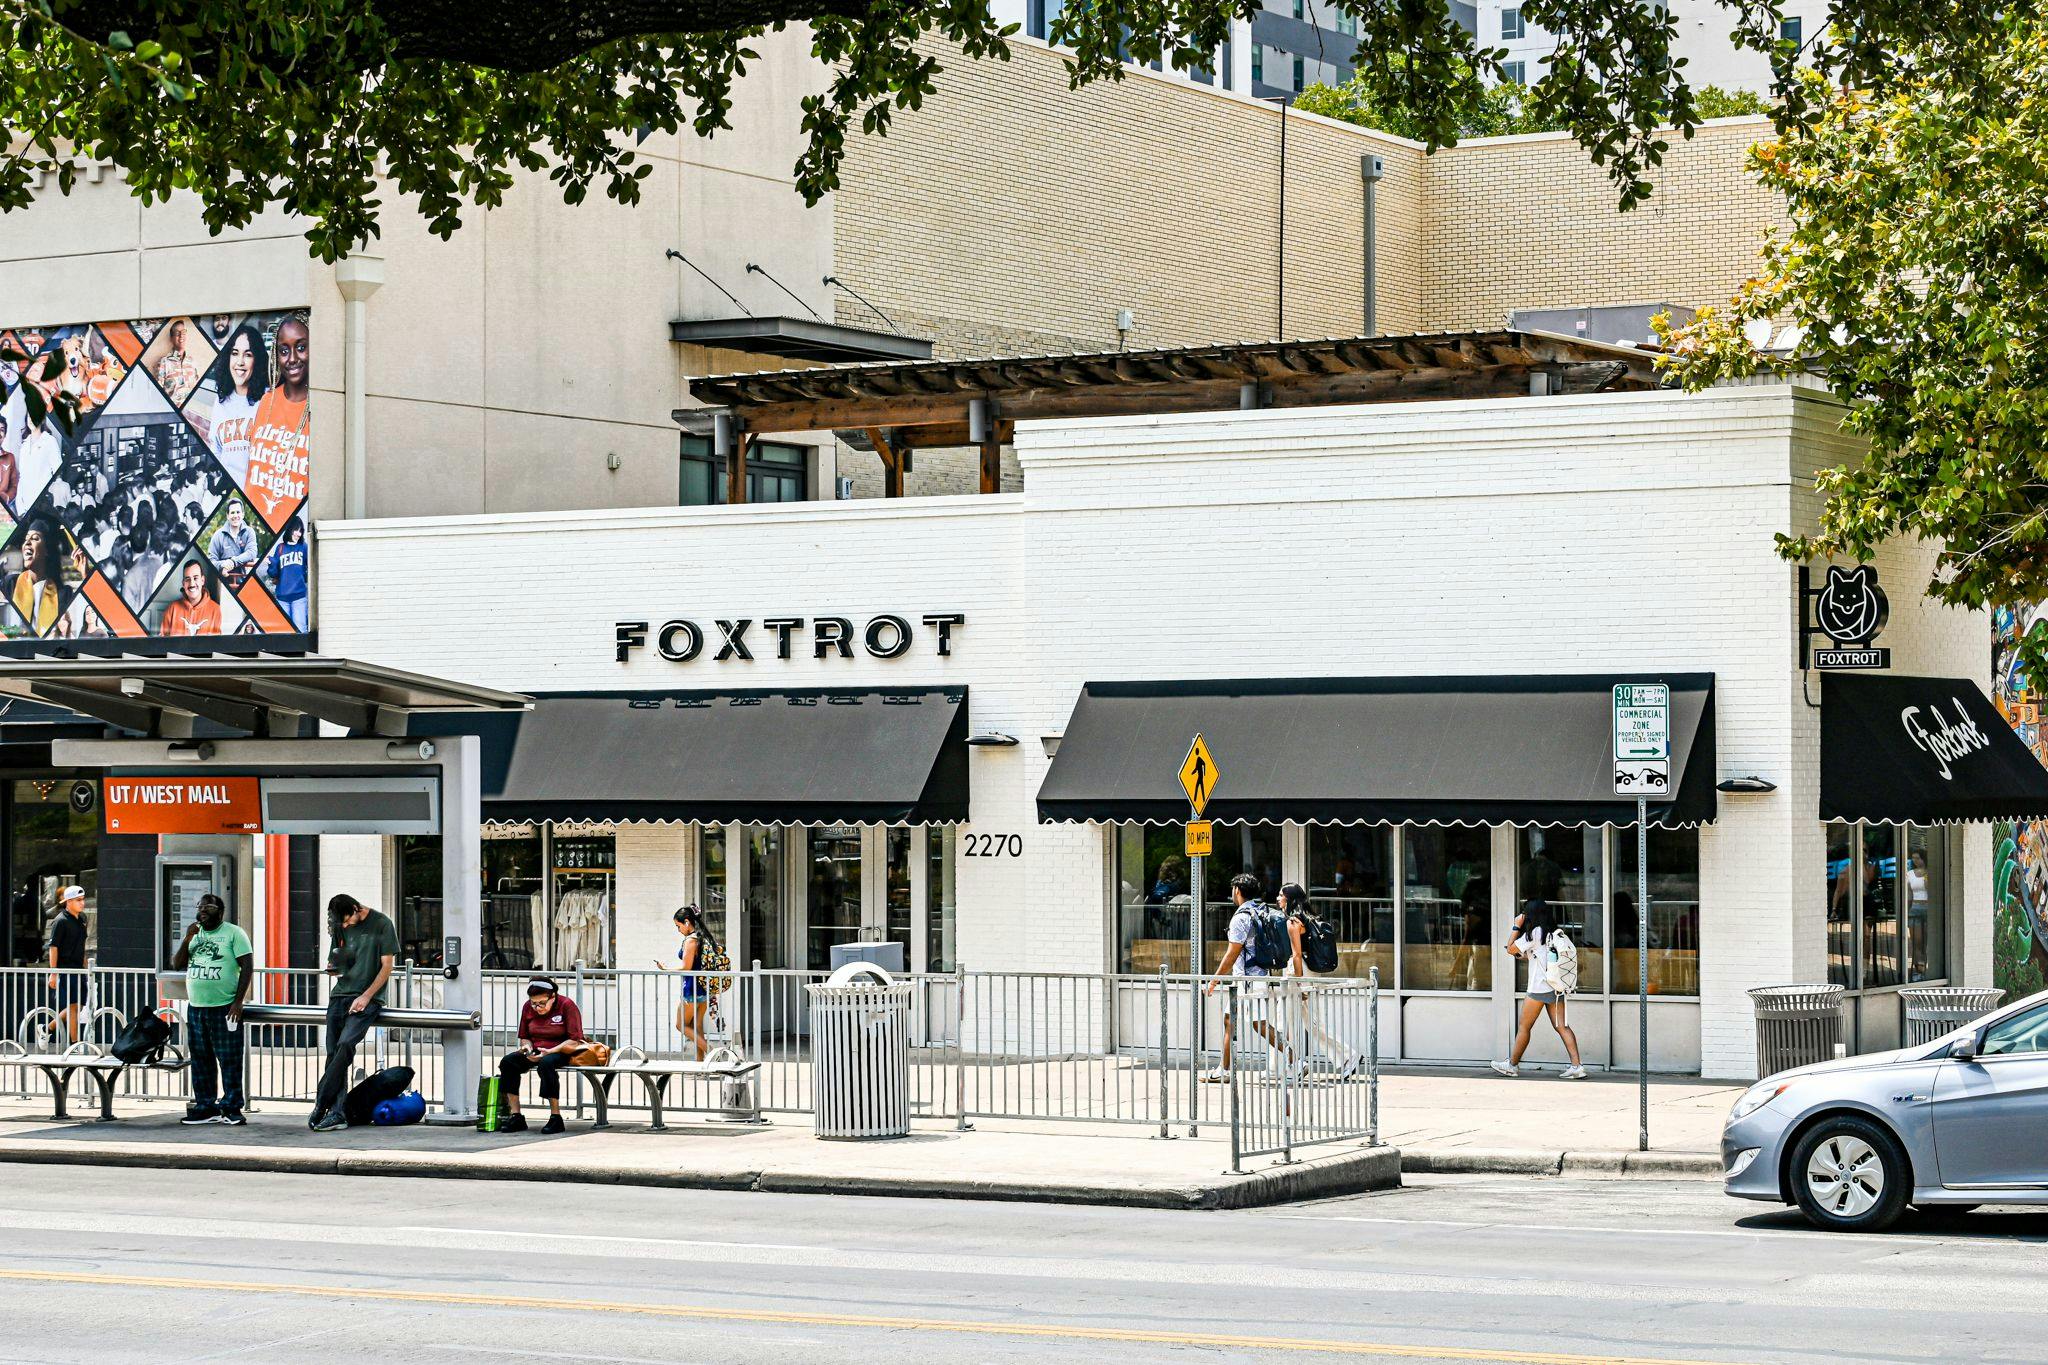 Foxtrot exterior